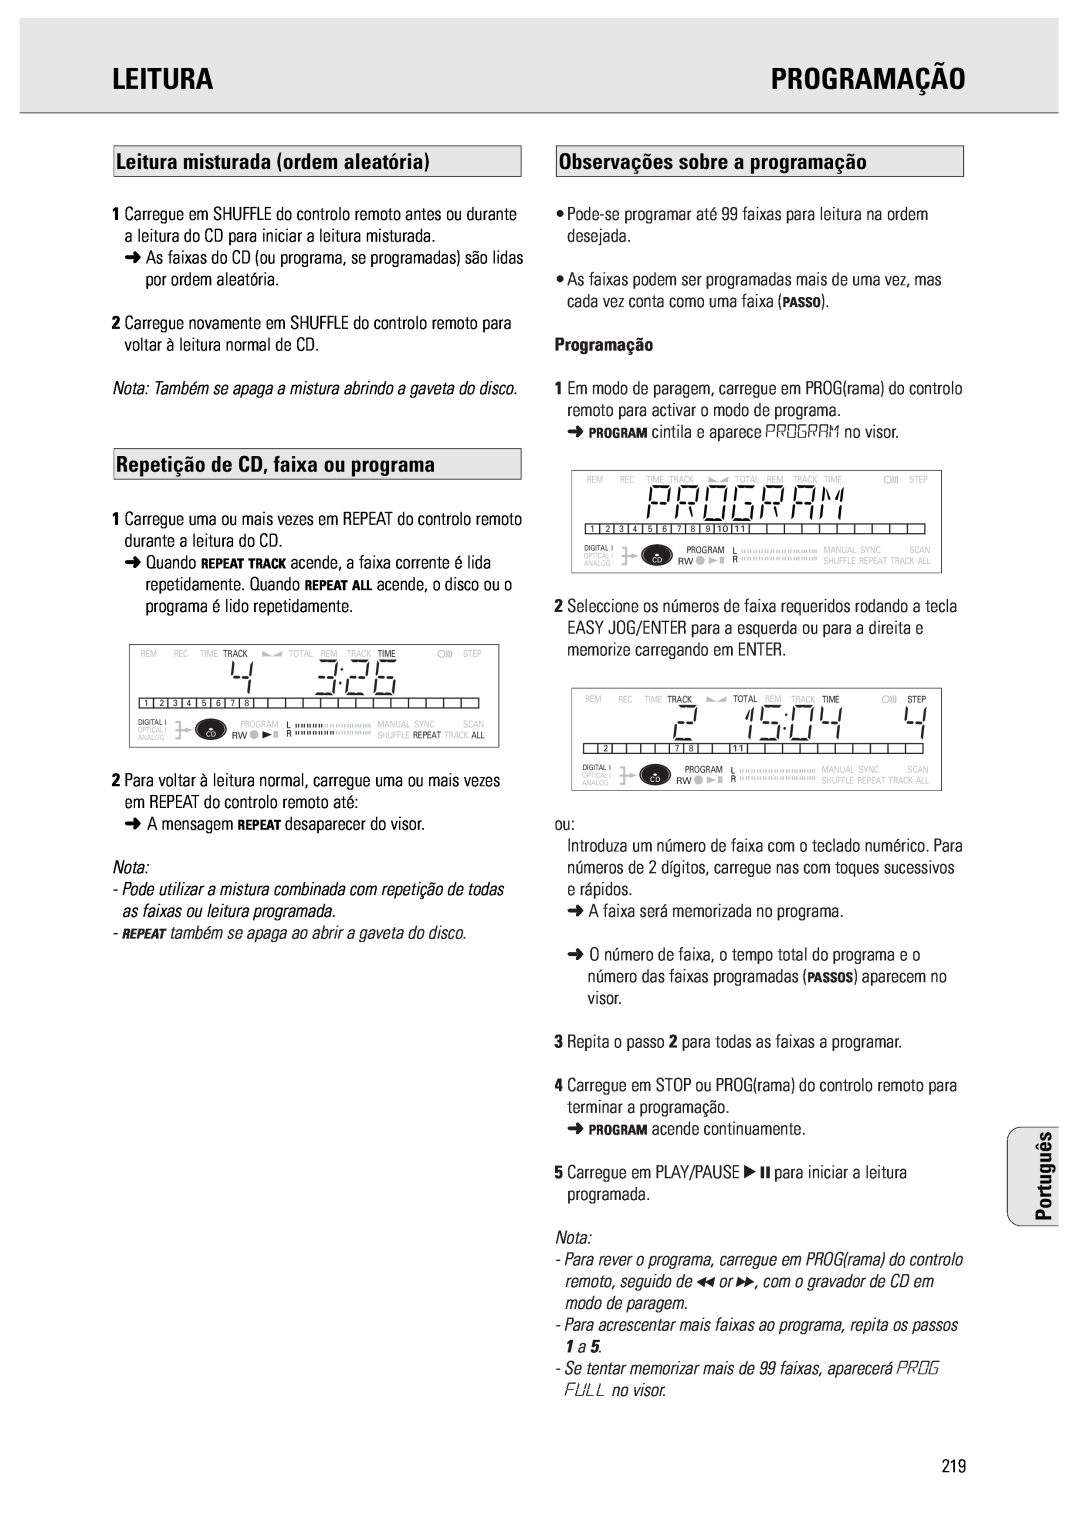 Philips CDR570 manual Programação, Leitura misturada ordem aleatória, Observações sobre a programação, Português, Nota 